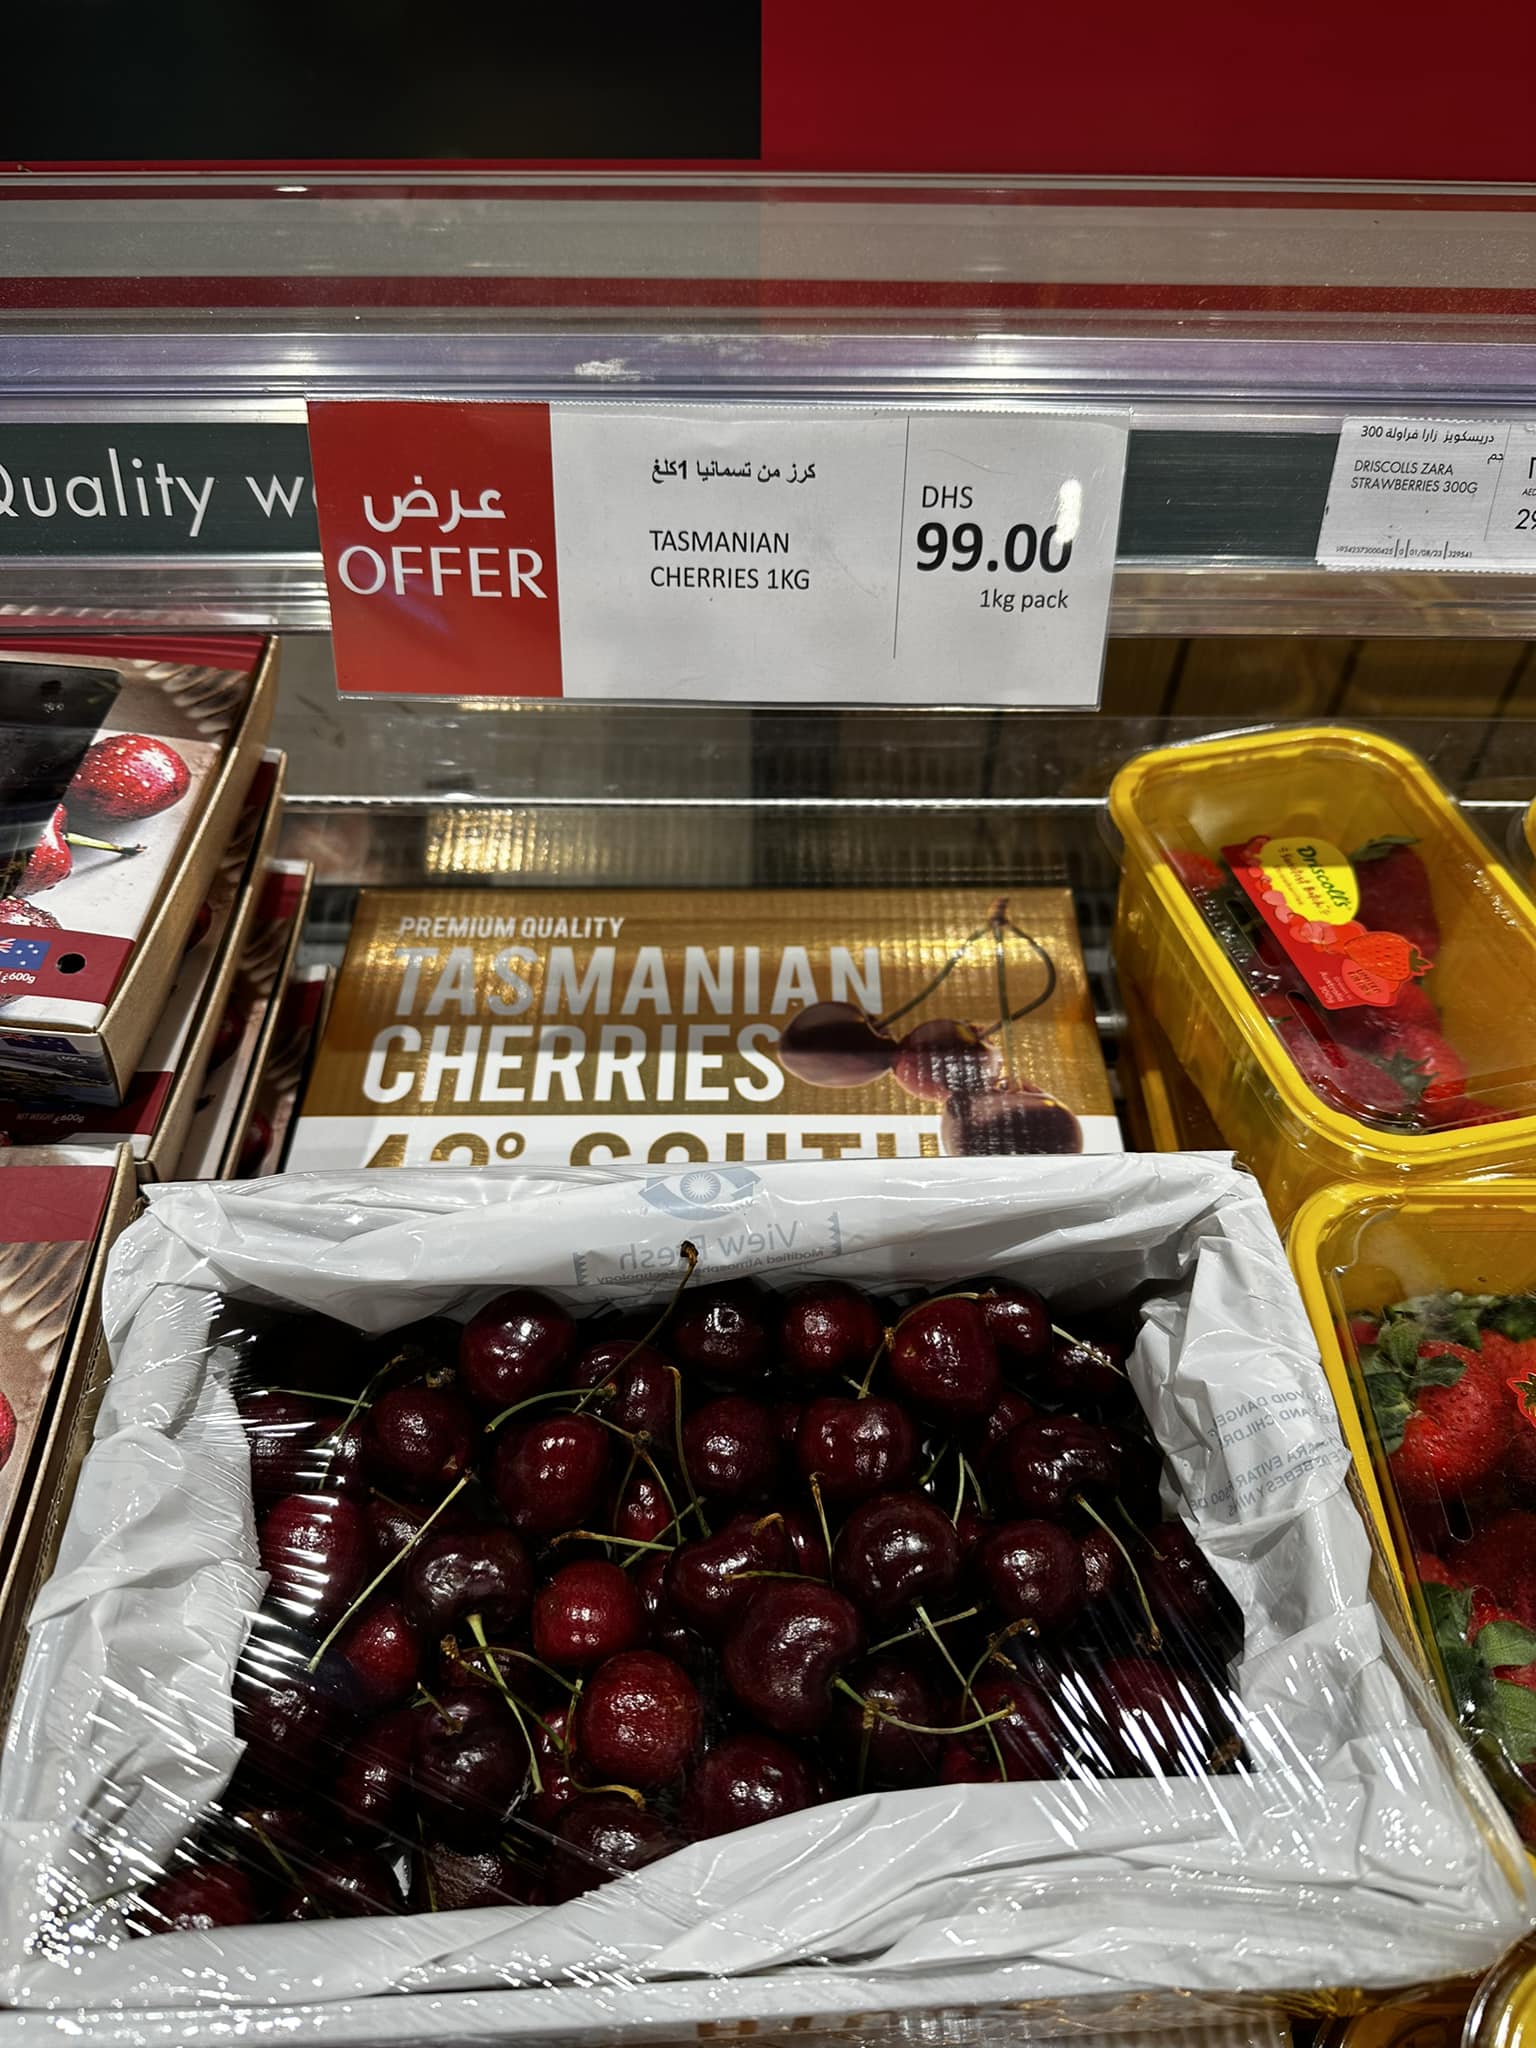 Offerta speciale, 1kg di ciliegie, 25 euro.

Vengono dalla Tasmania.

A piedi.